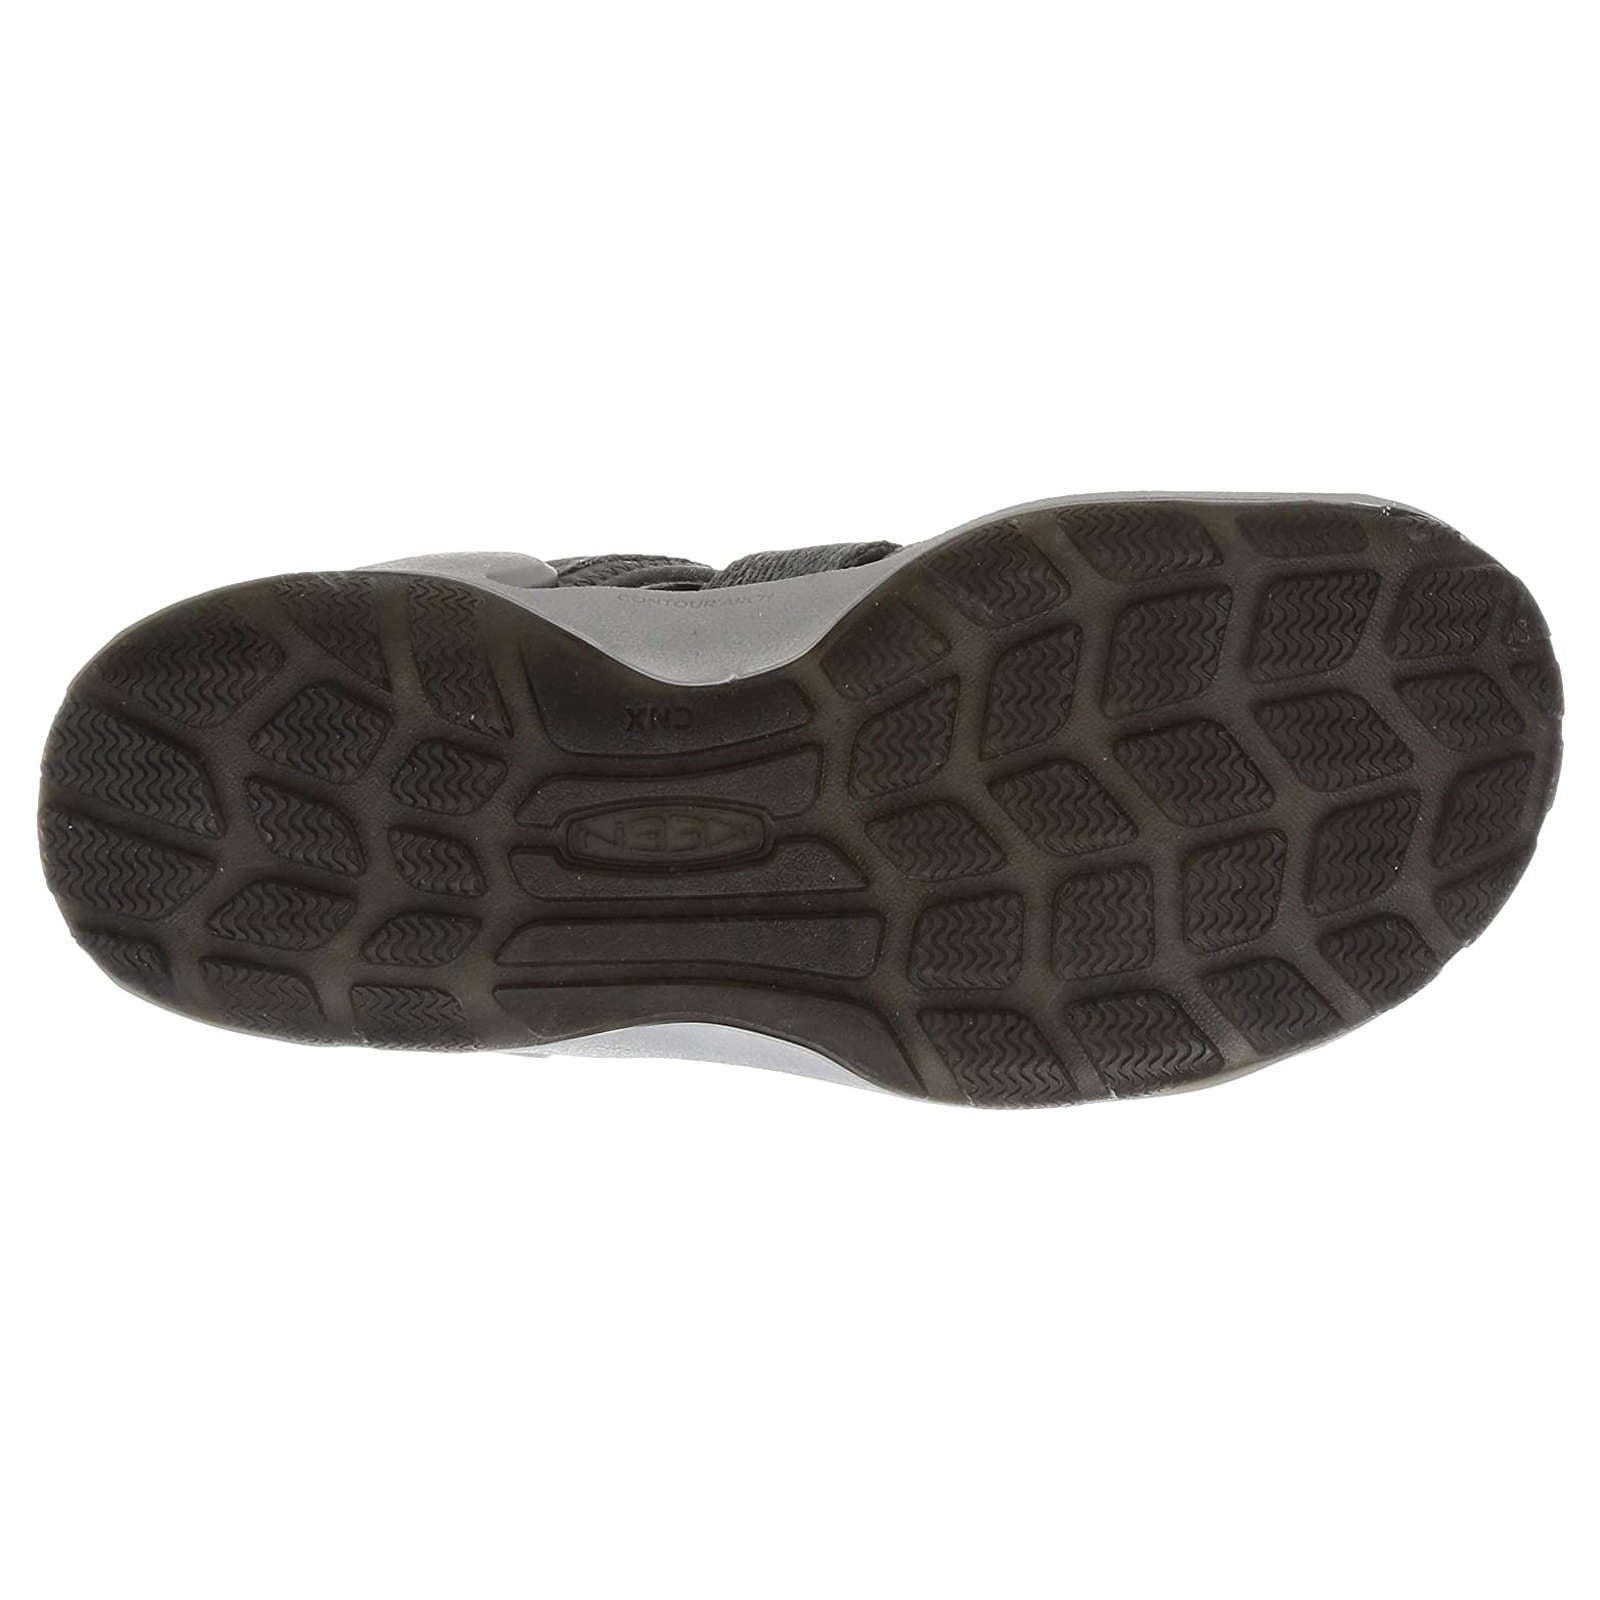 Keen Clearwater II CNX Men's Waterproof Sandals#color_steel grey evening primrose